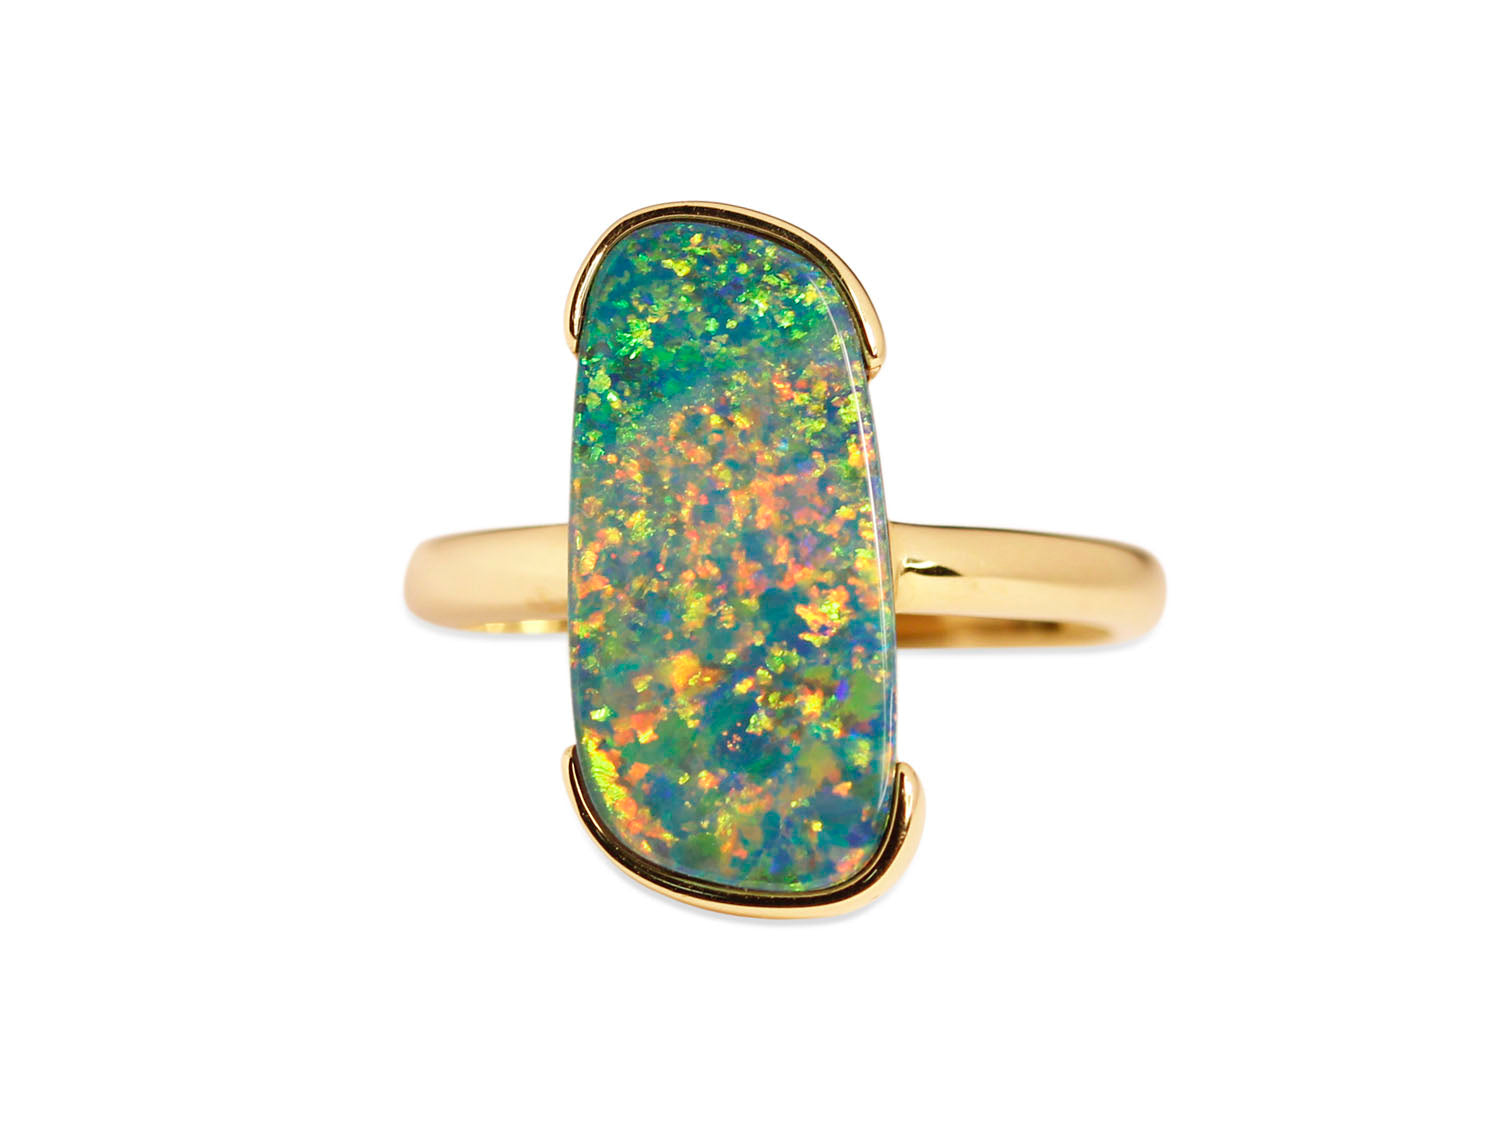 Australian Opal Doublet Ring in 14K Yellow Gold